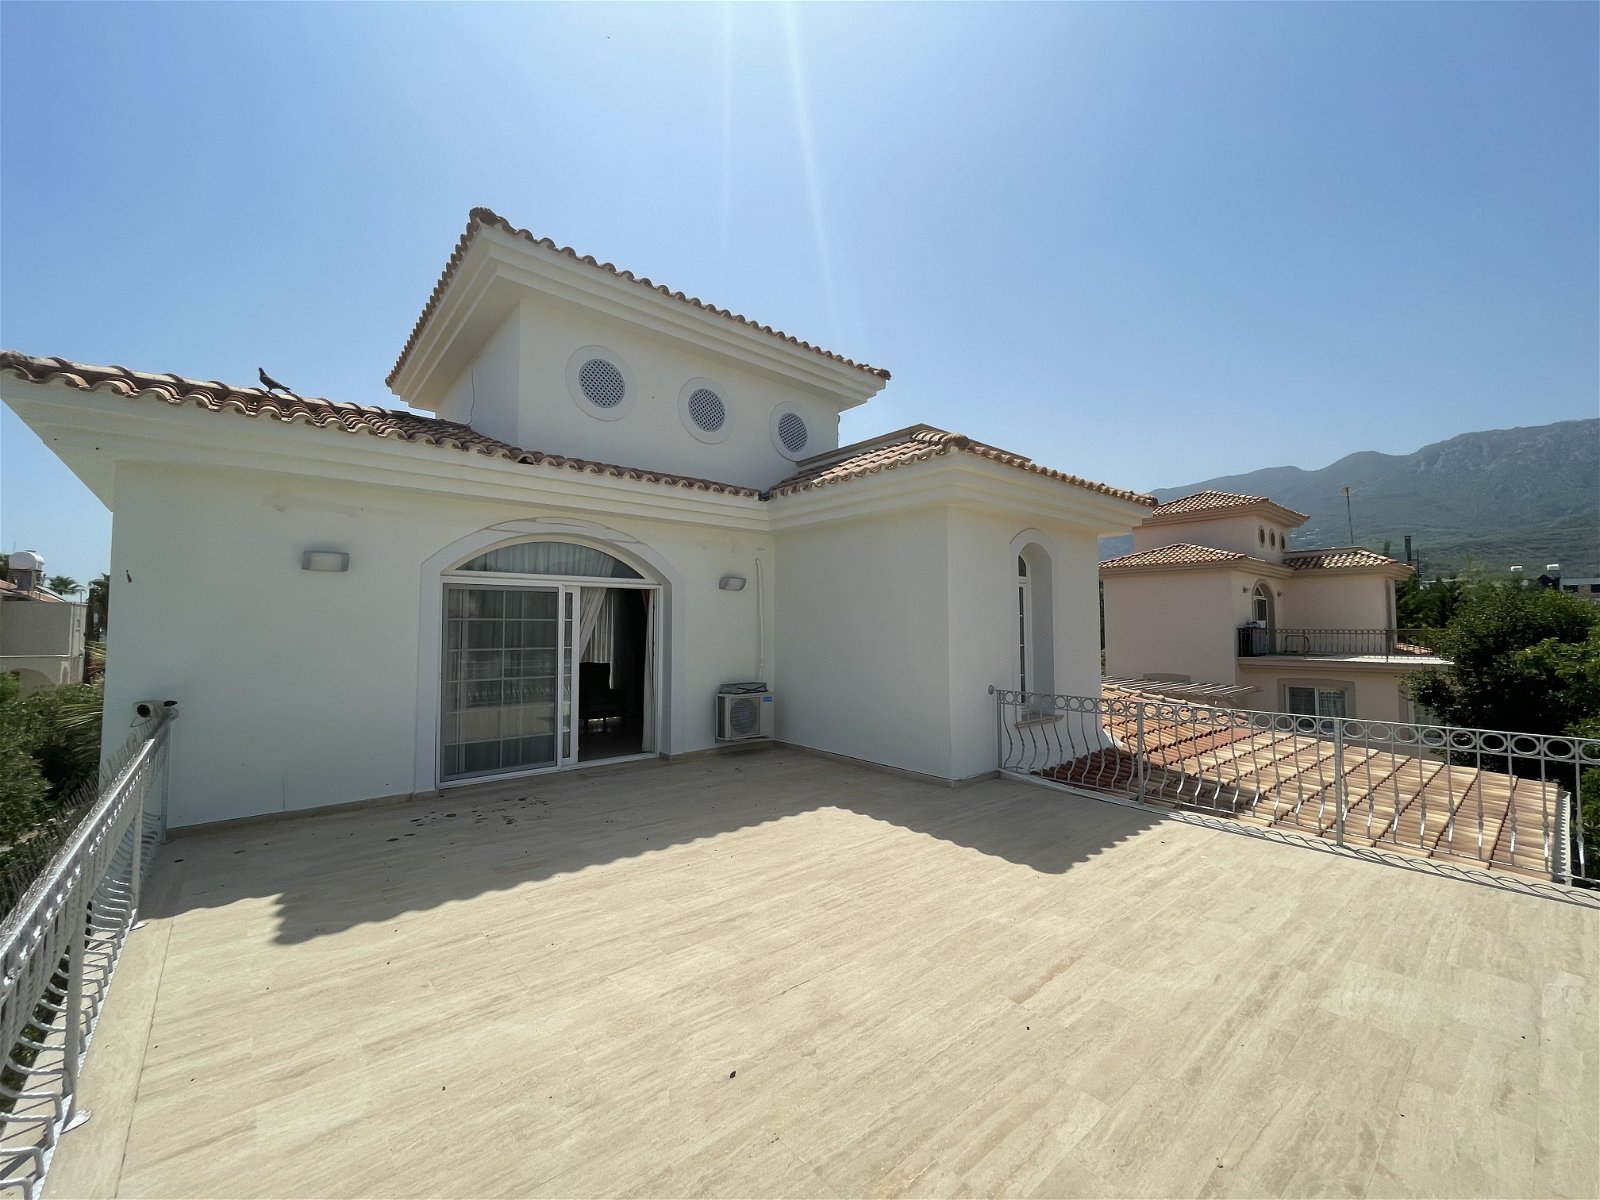 For Sale 3 +1 Turkish Deeded Villa in Karaoglanoglu Kyrenia-4d5e5736-f80d-4185-a4b1-d743f78b588b